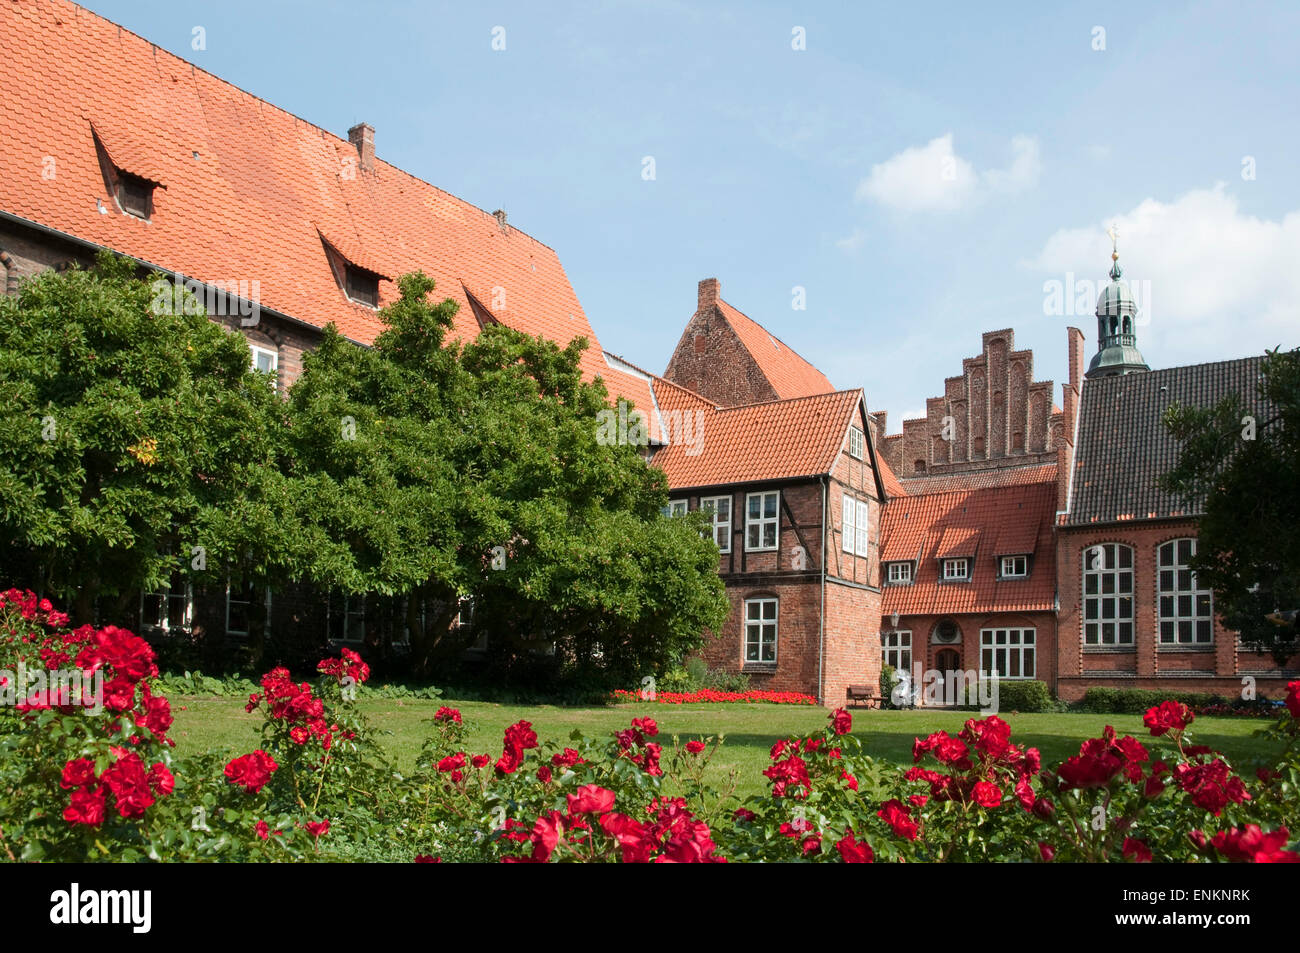 Rathausgarten, Altstadt, Lueneburg, Niedersachsen, Deutschland |  garden of guild hall,  Lueneburg, Lower Saxony, Germany Stock Photo